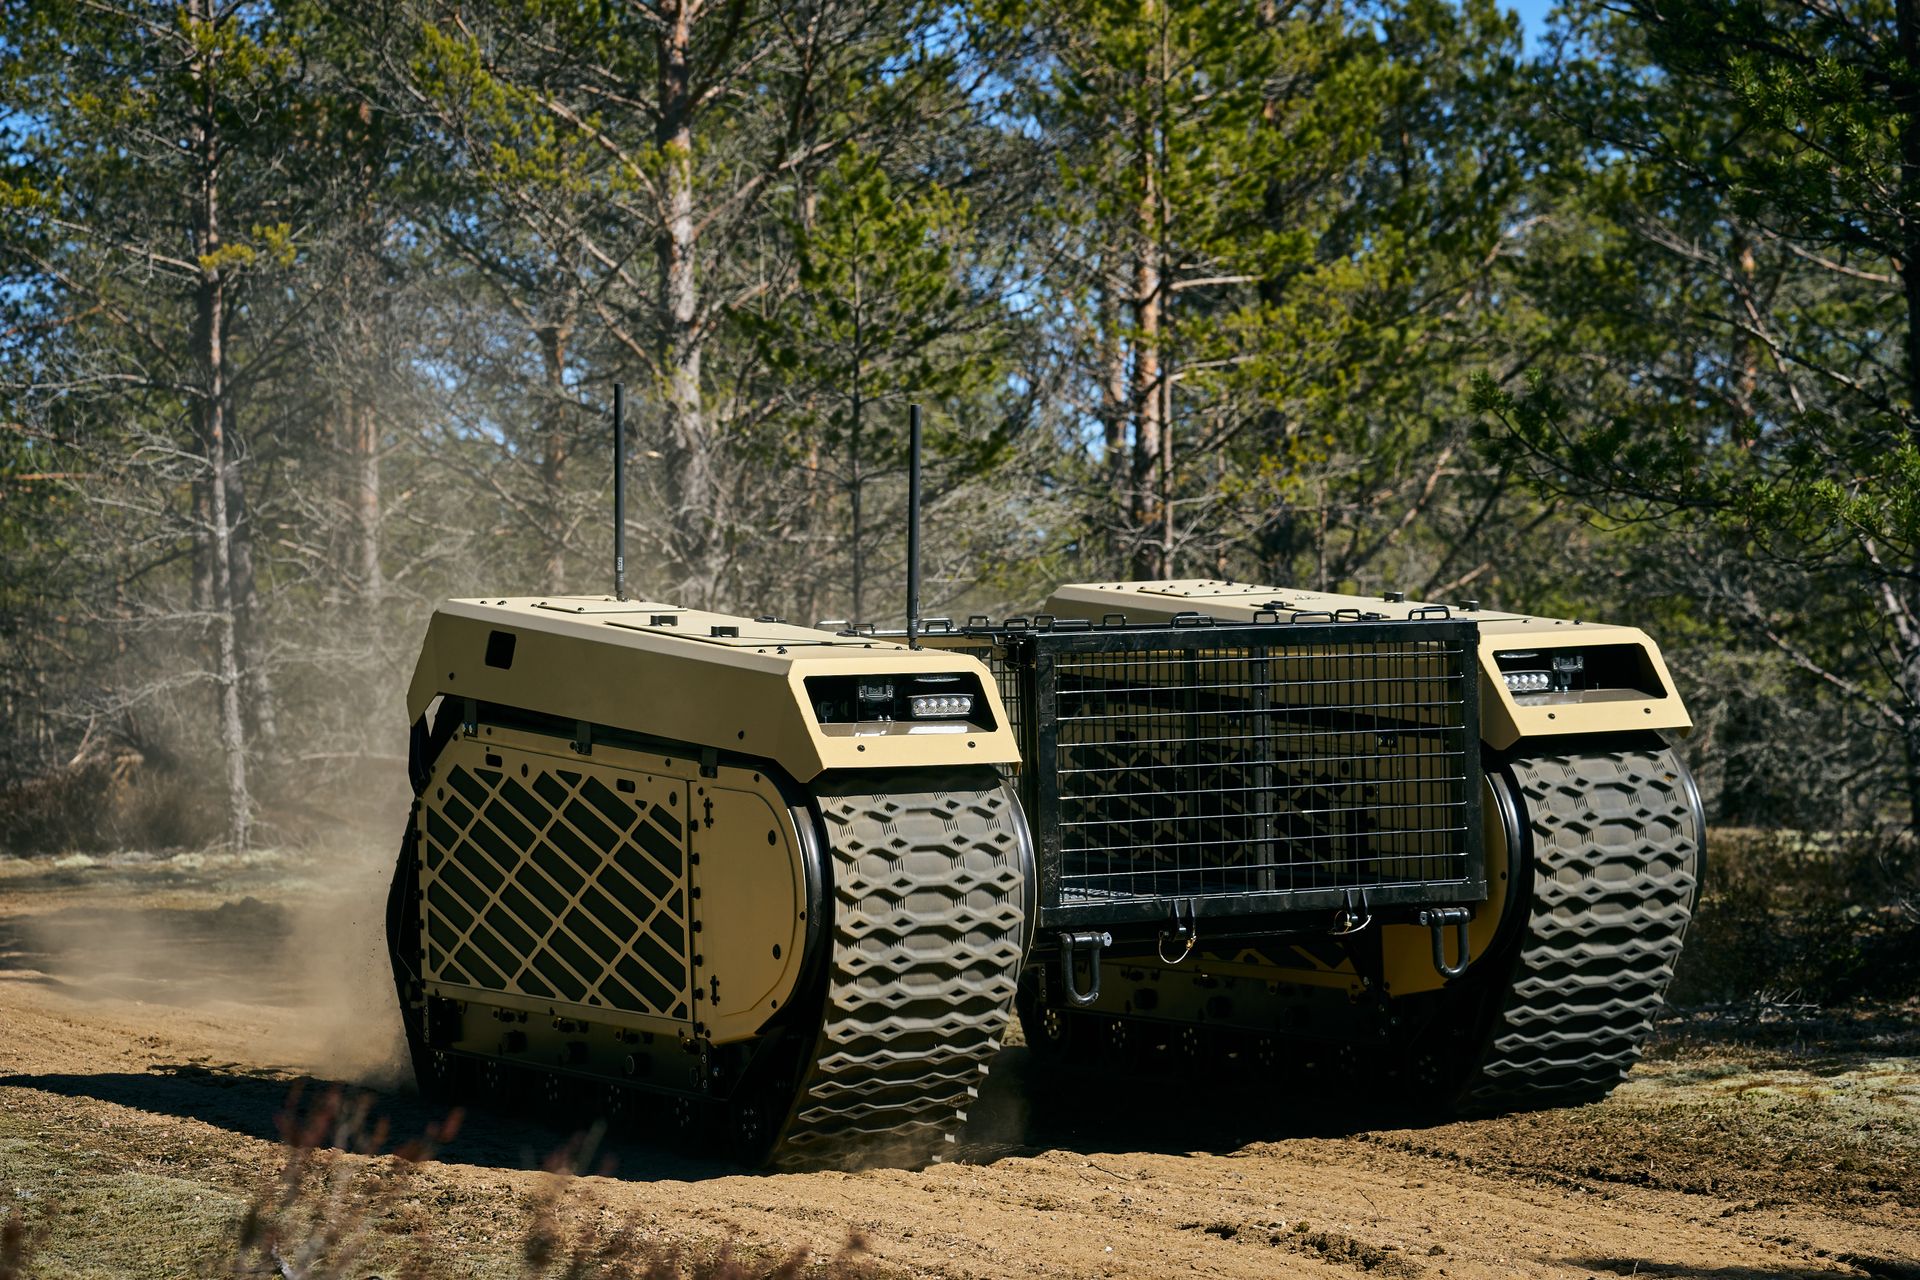 Piata generácia tankov Themis UGV od Milrem Robotics je opísaná ako „viacúčelové pásové vozidlo“, ktoré môže byť vybavené rôznymi bojovými technológiami, ako sú zbraňové systémy, pripútané drony a detekčné zariadenia IED.